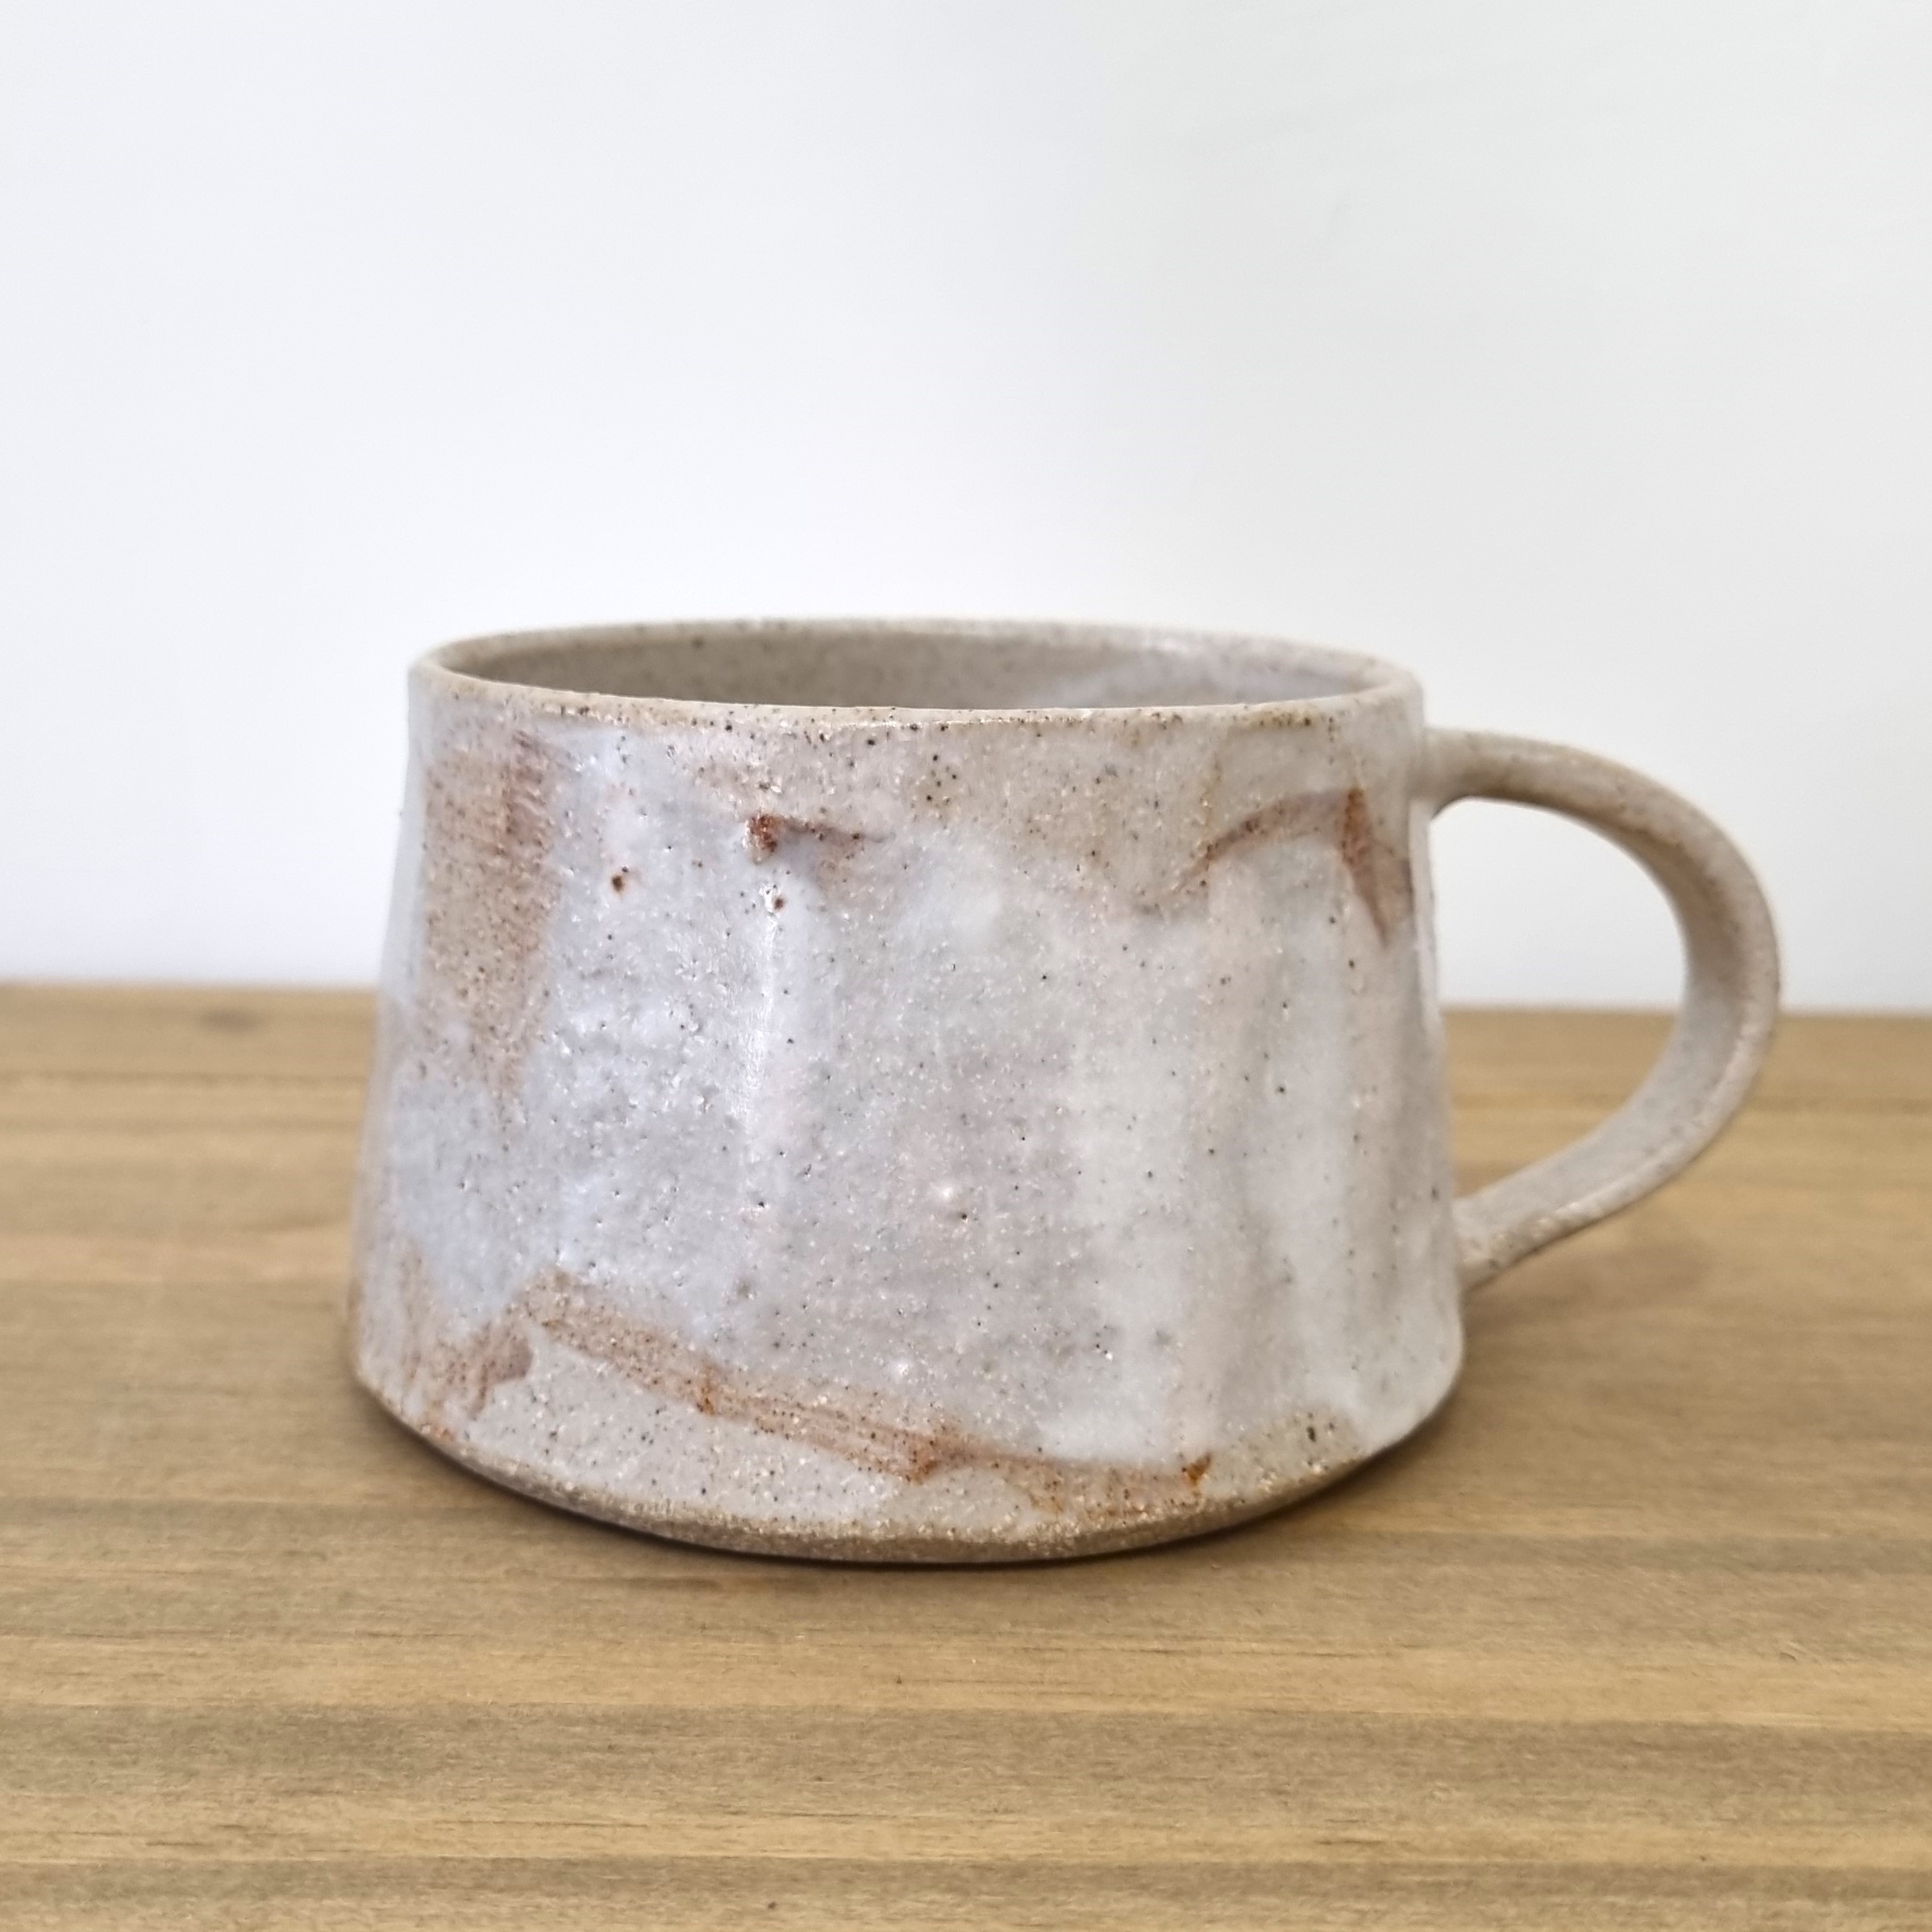 'Short Mug I' by artist Robert Hunter